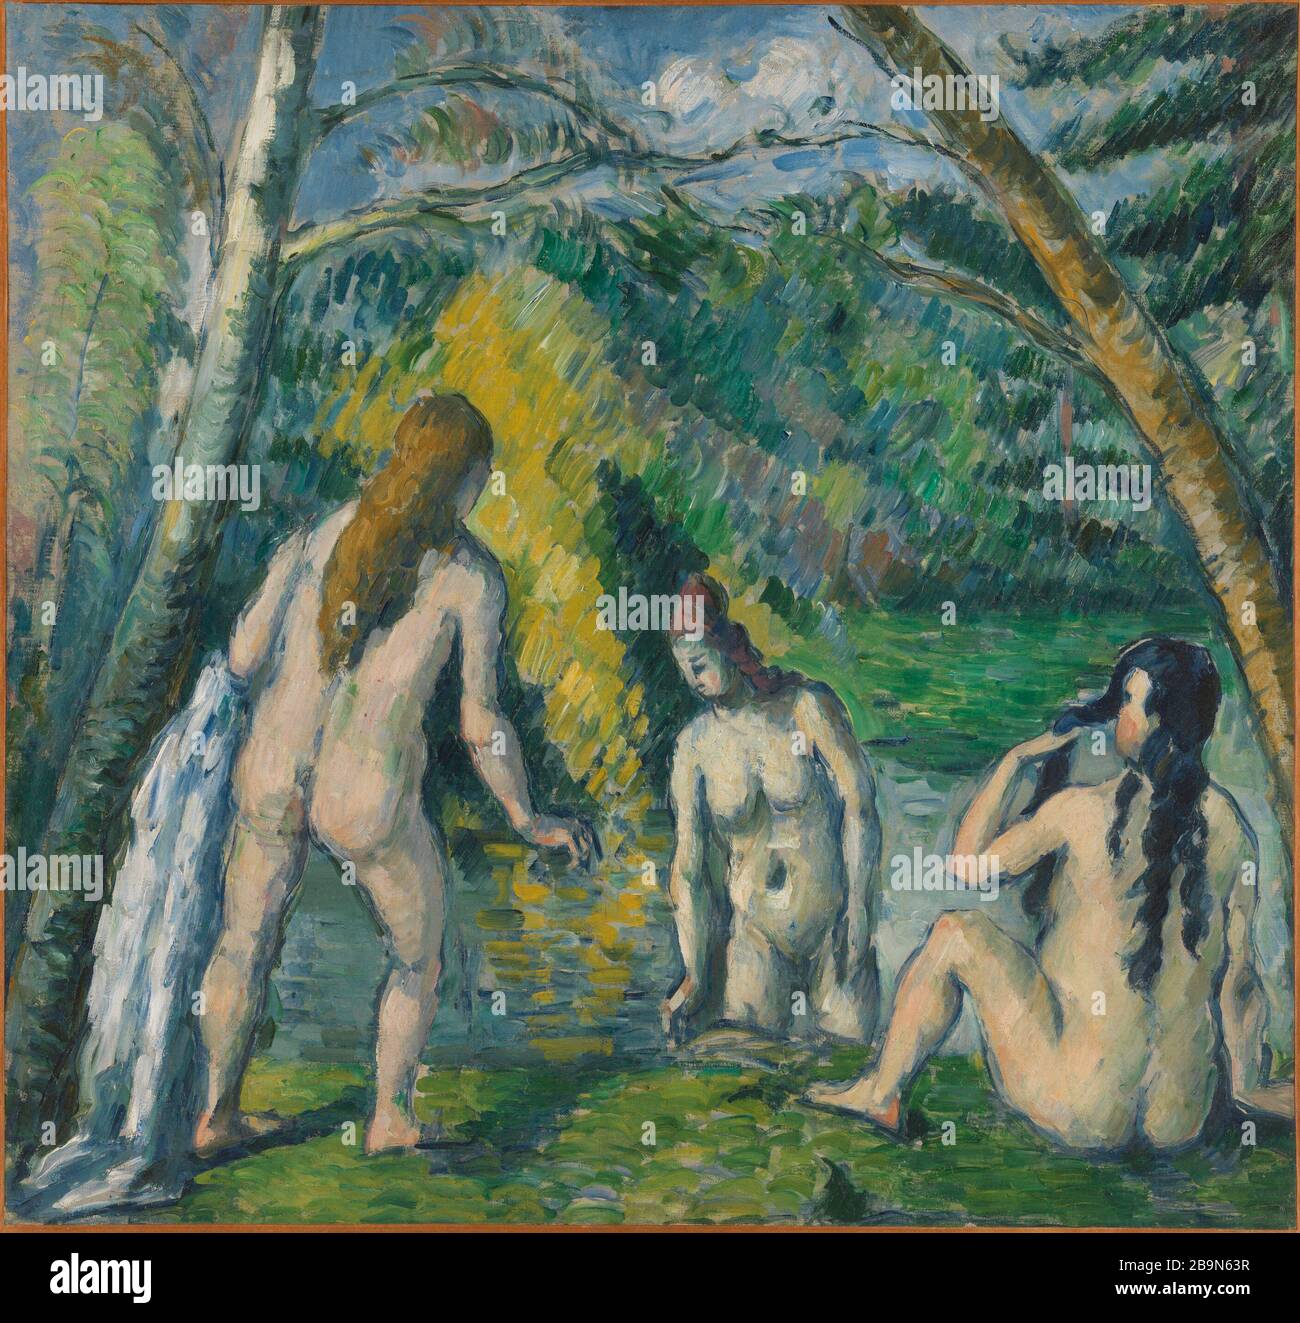 Tre bagnanti Paul Cézanne (1839-1906). "Les trois baigneuses". Vers 1879-1882. Musée des Beaux-Arts de la Ville de Paris, Petit Palais. Foto Stock